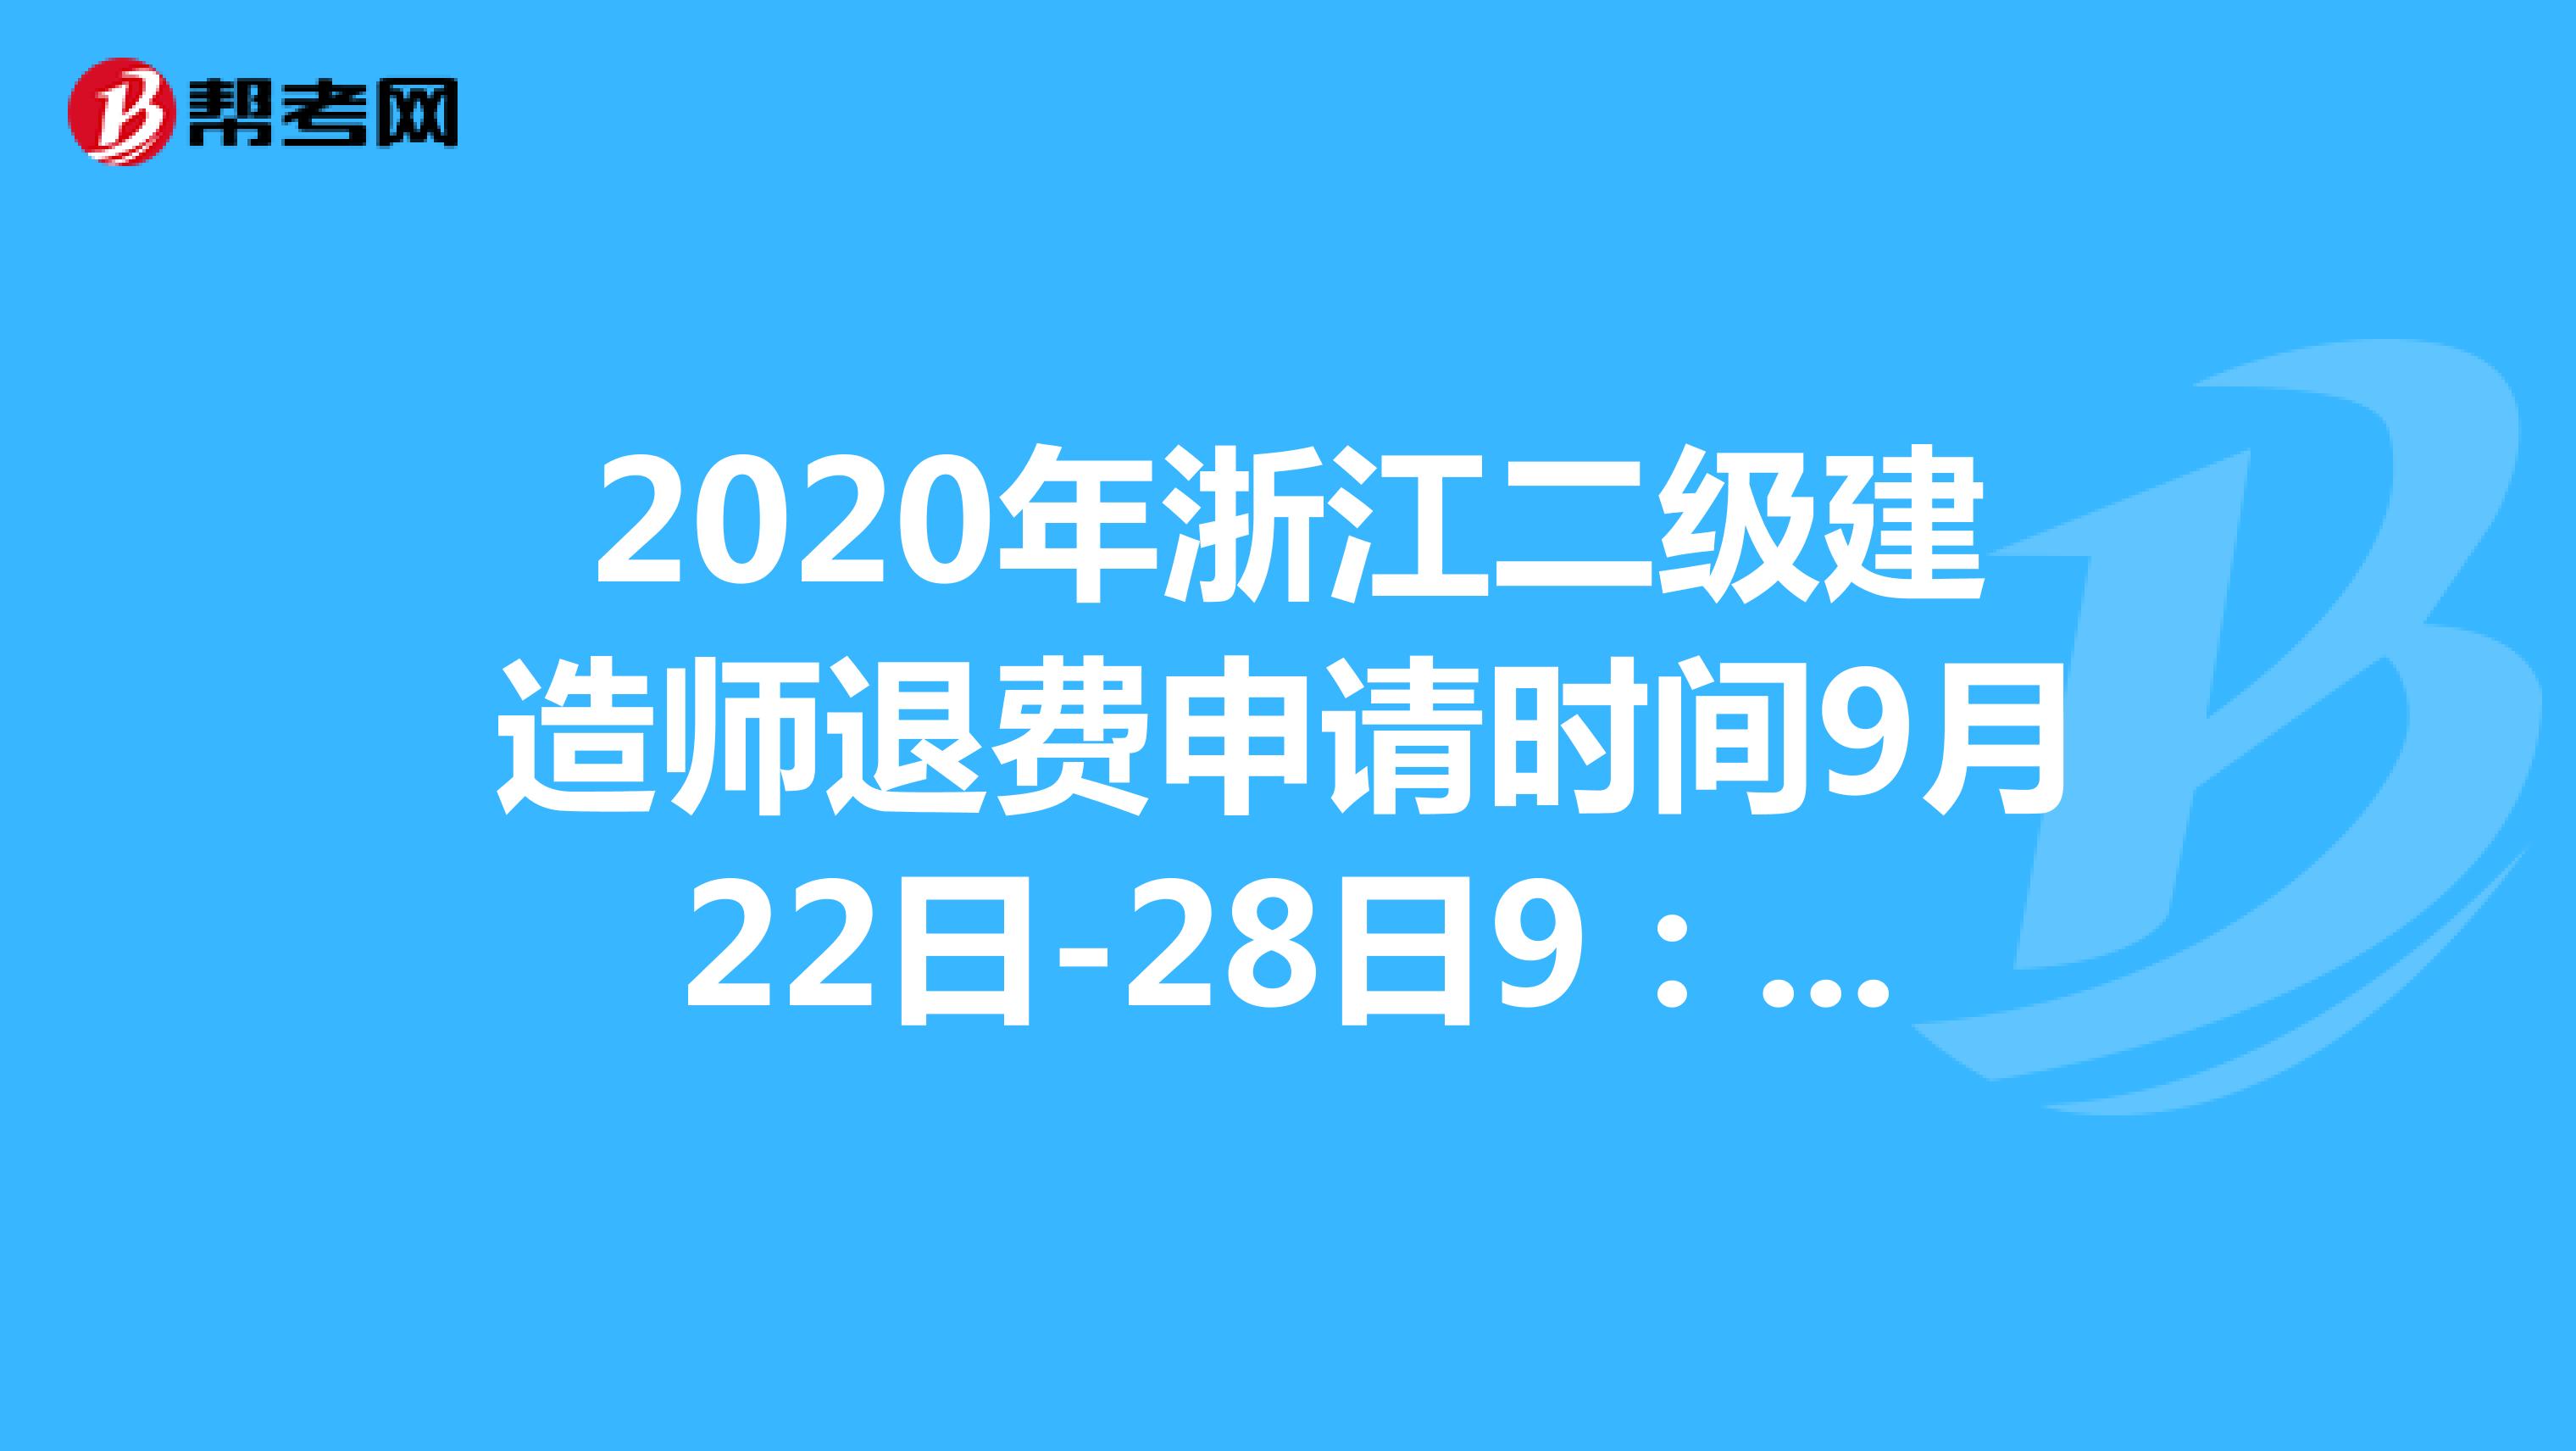 2020年浙江二级建造师退费申请时间9月22日-28日9：00